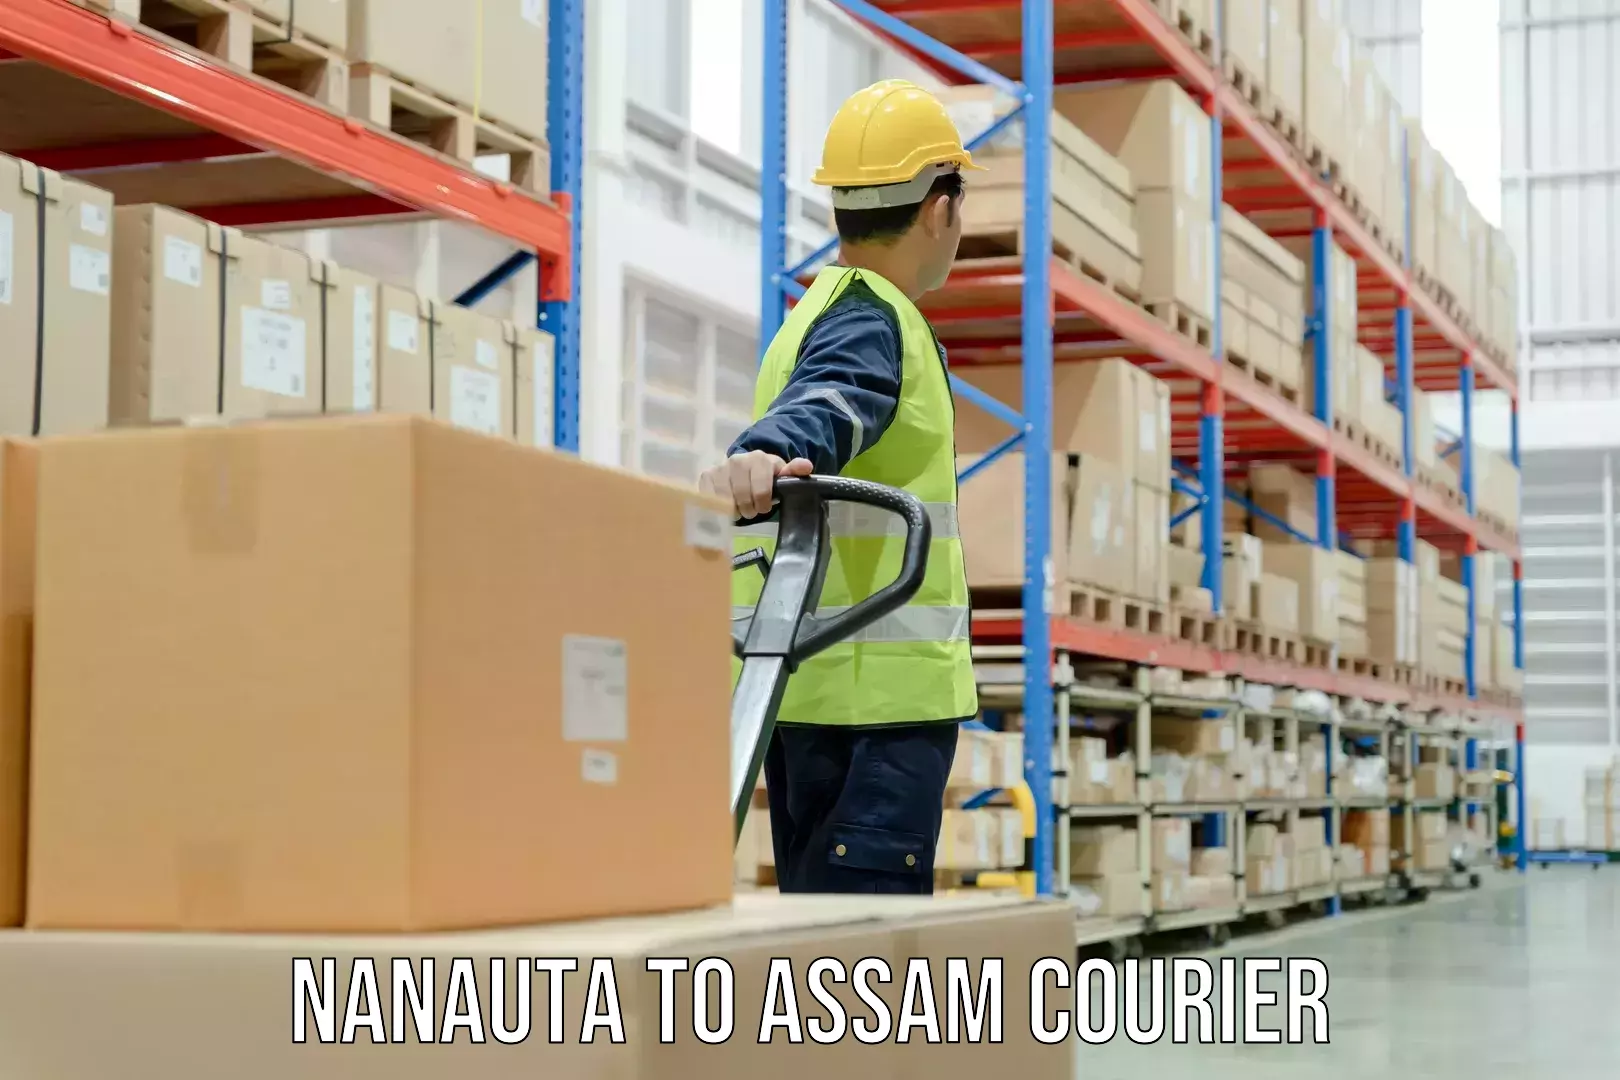 Courier service booking Nanauta to Nalbari